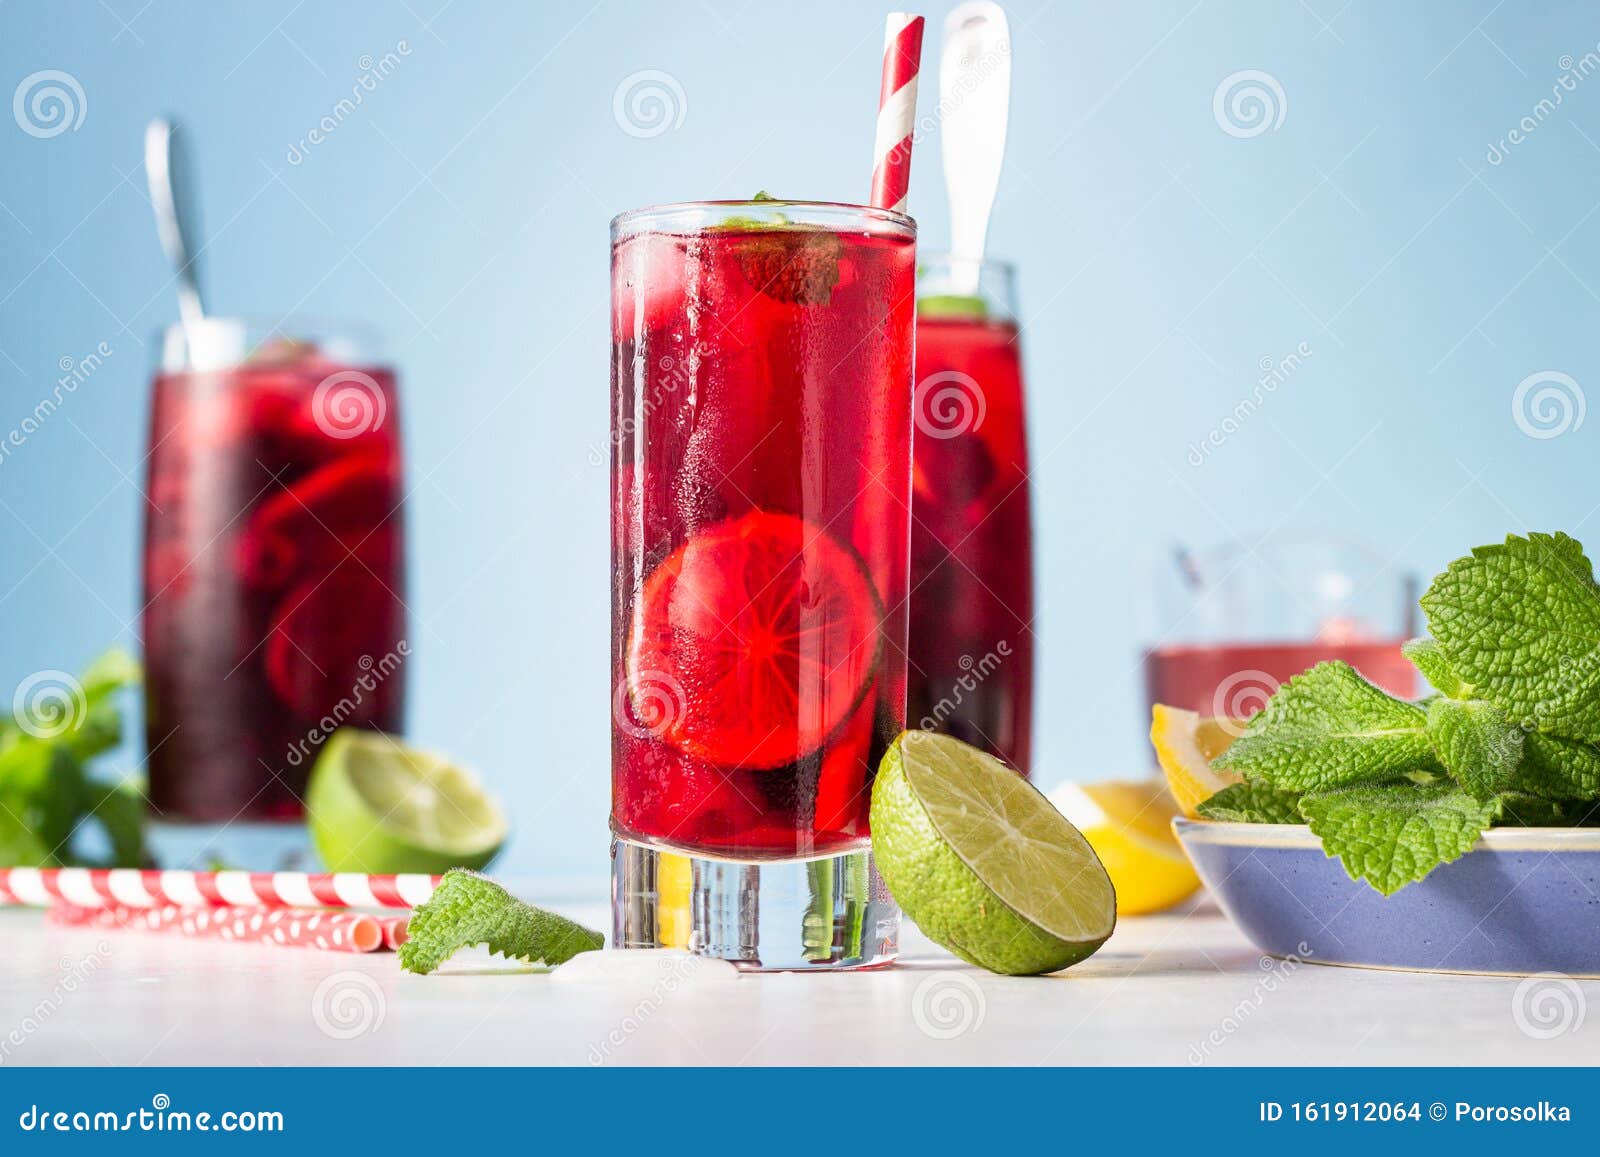 iced hibiscus tea karkade, red sorrel, agua de flor de jamaica or lemonade with raspberries, blackberries, mint and citrus.